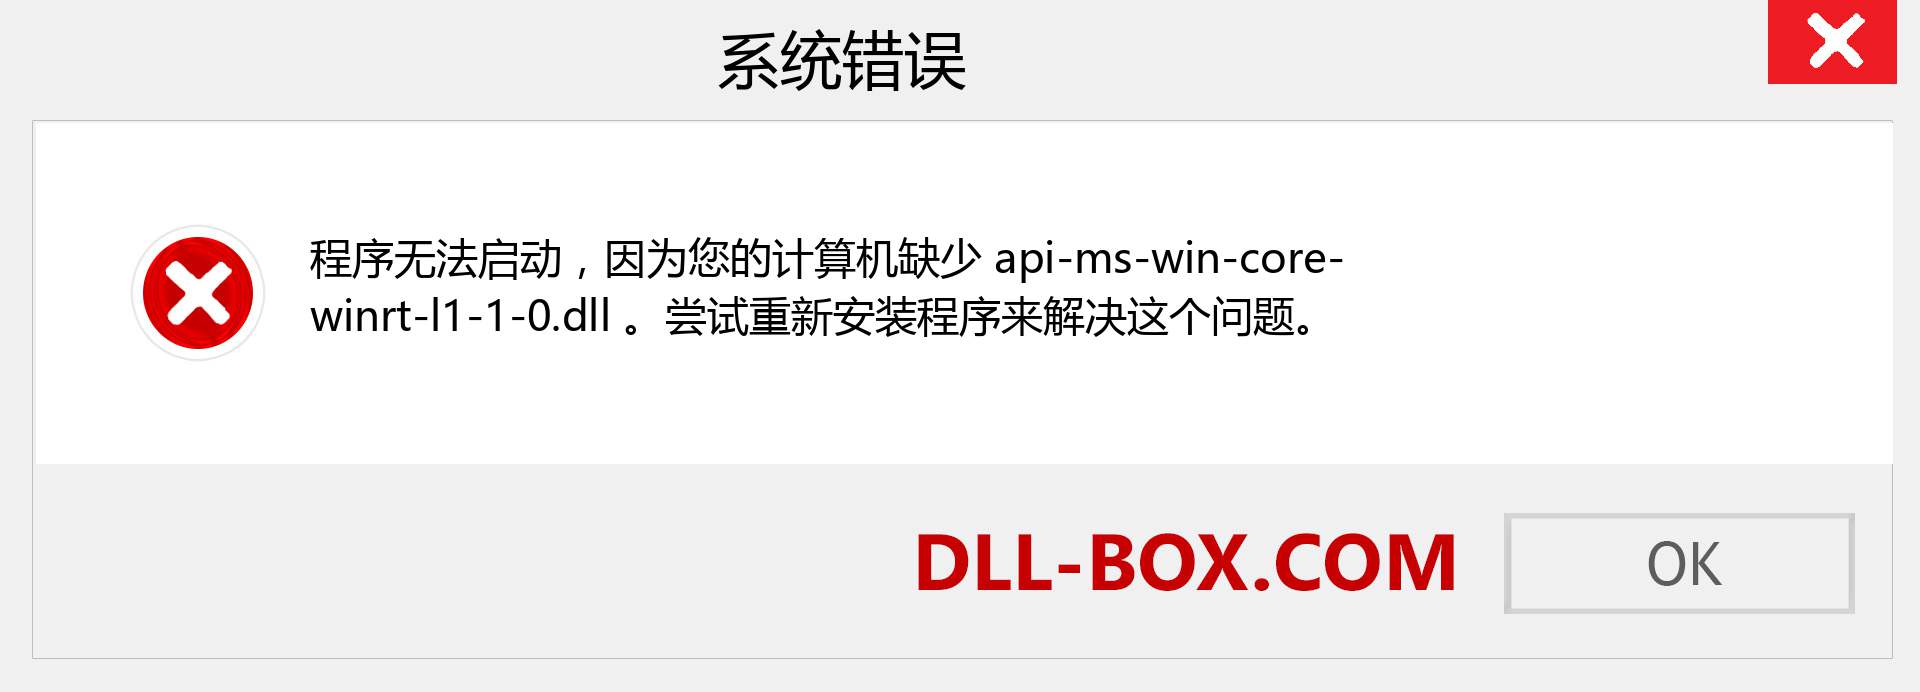 api-ms-win-core-winrt-l1-1-0.dll 文件丢失？。 适用于 Windows 7、8、10 的下载 - 修复 Windows、照片、图像上的 api-ms-win-core-winrt-l1-1-0 dll 丢失错误